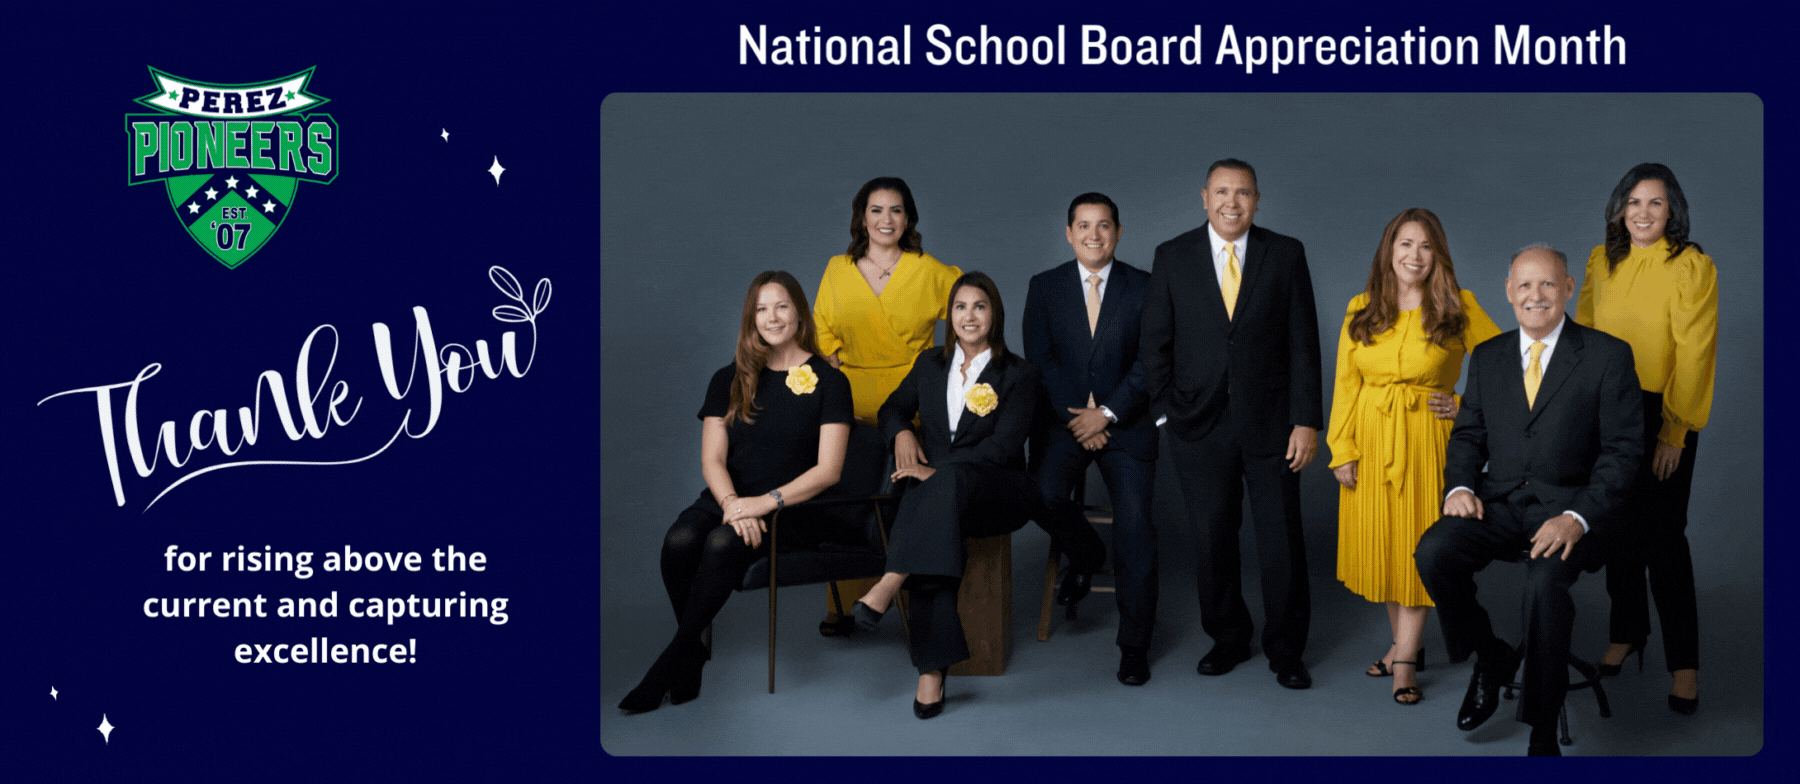 National School Board Appreciation